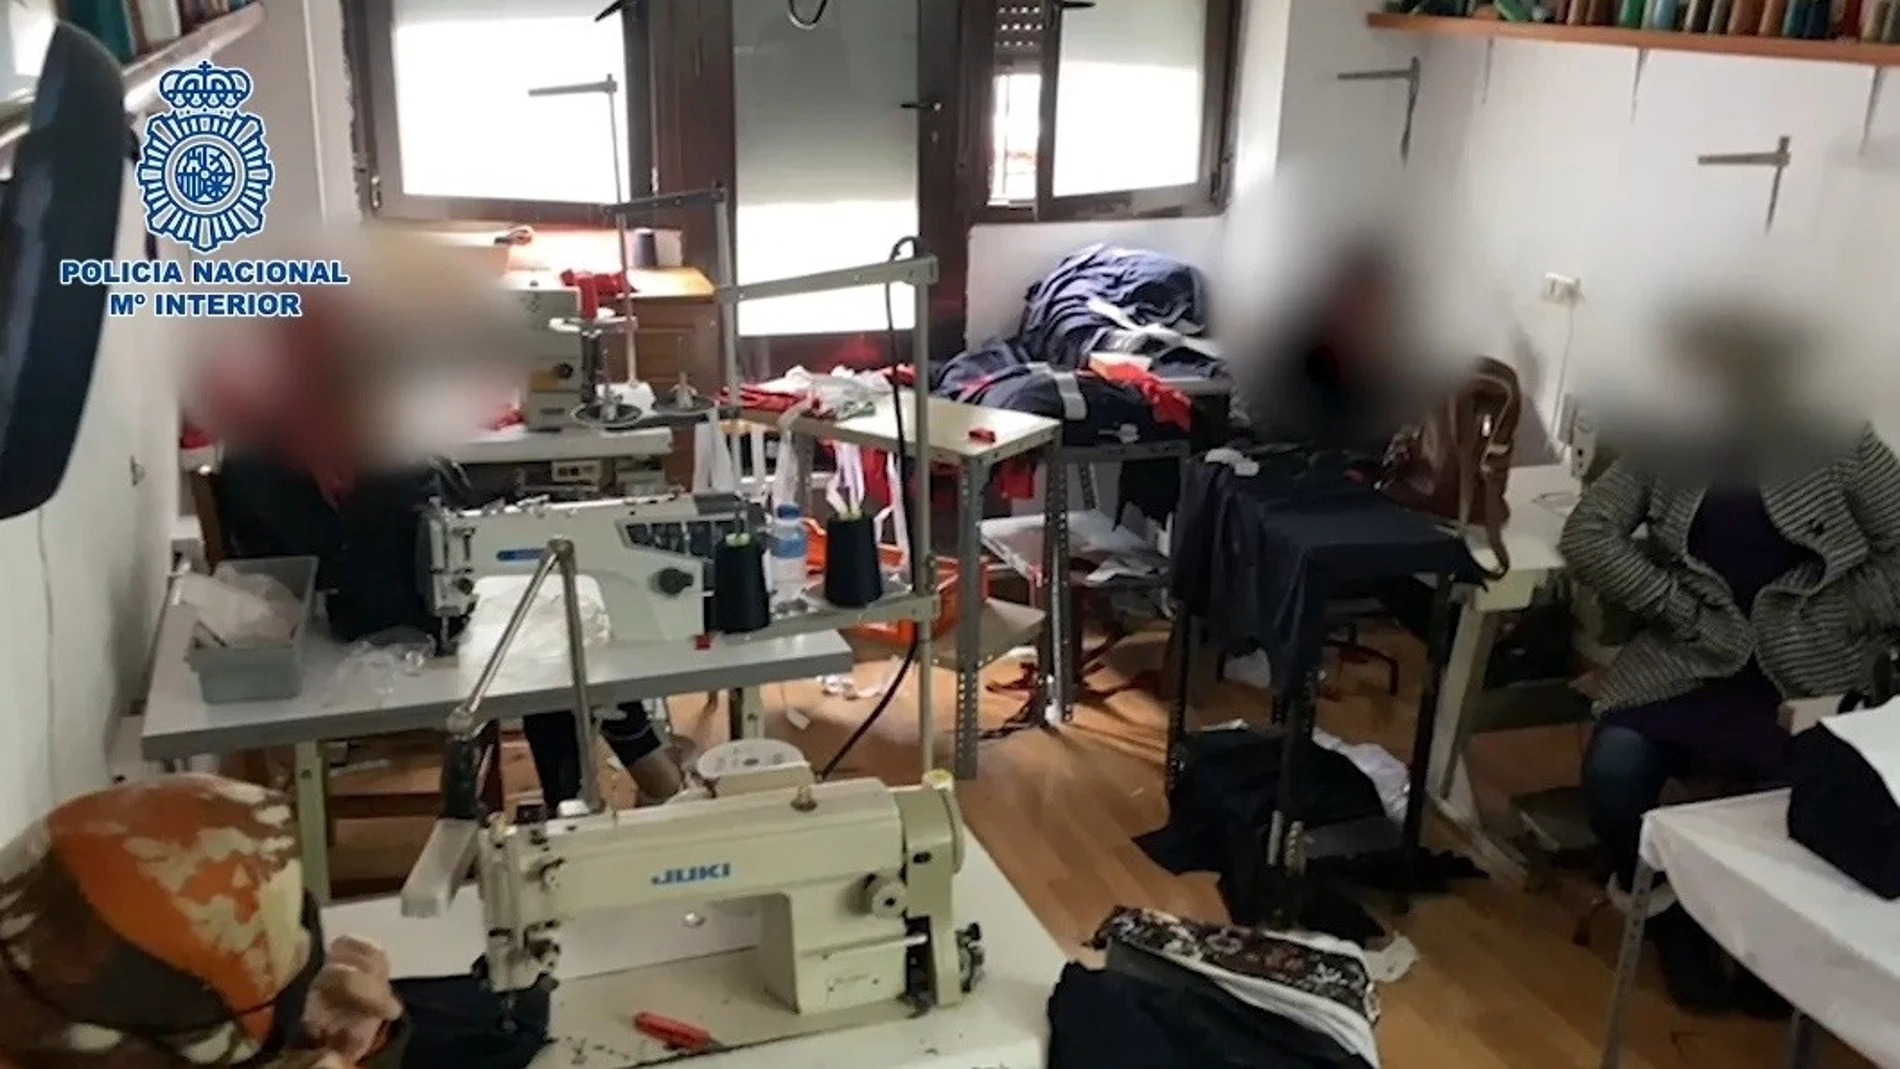 La Policía Nacional libera a 6 mujeres explotadas laboralmente y encerradas en un taller de costura en Carabanchel